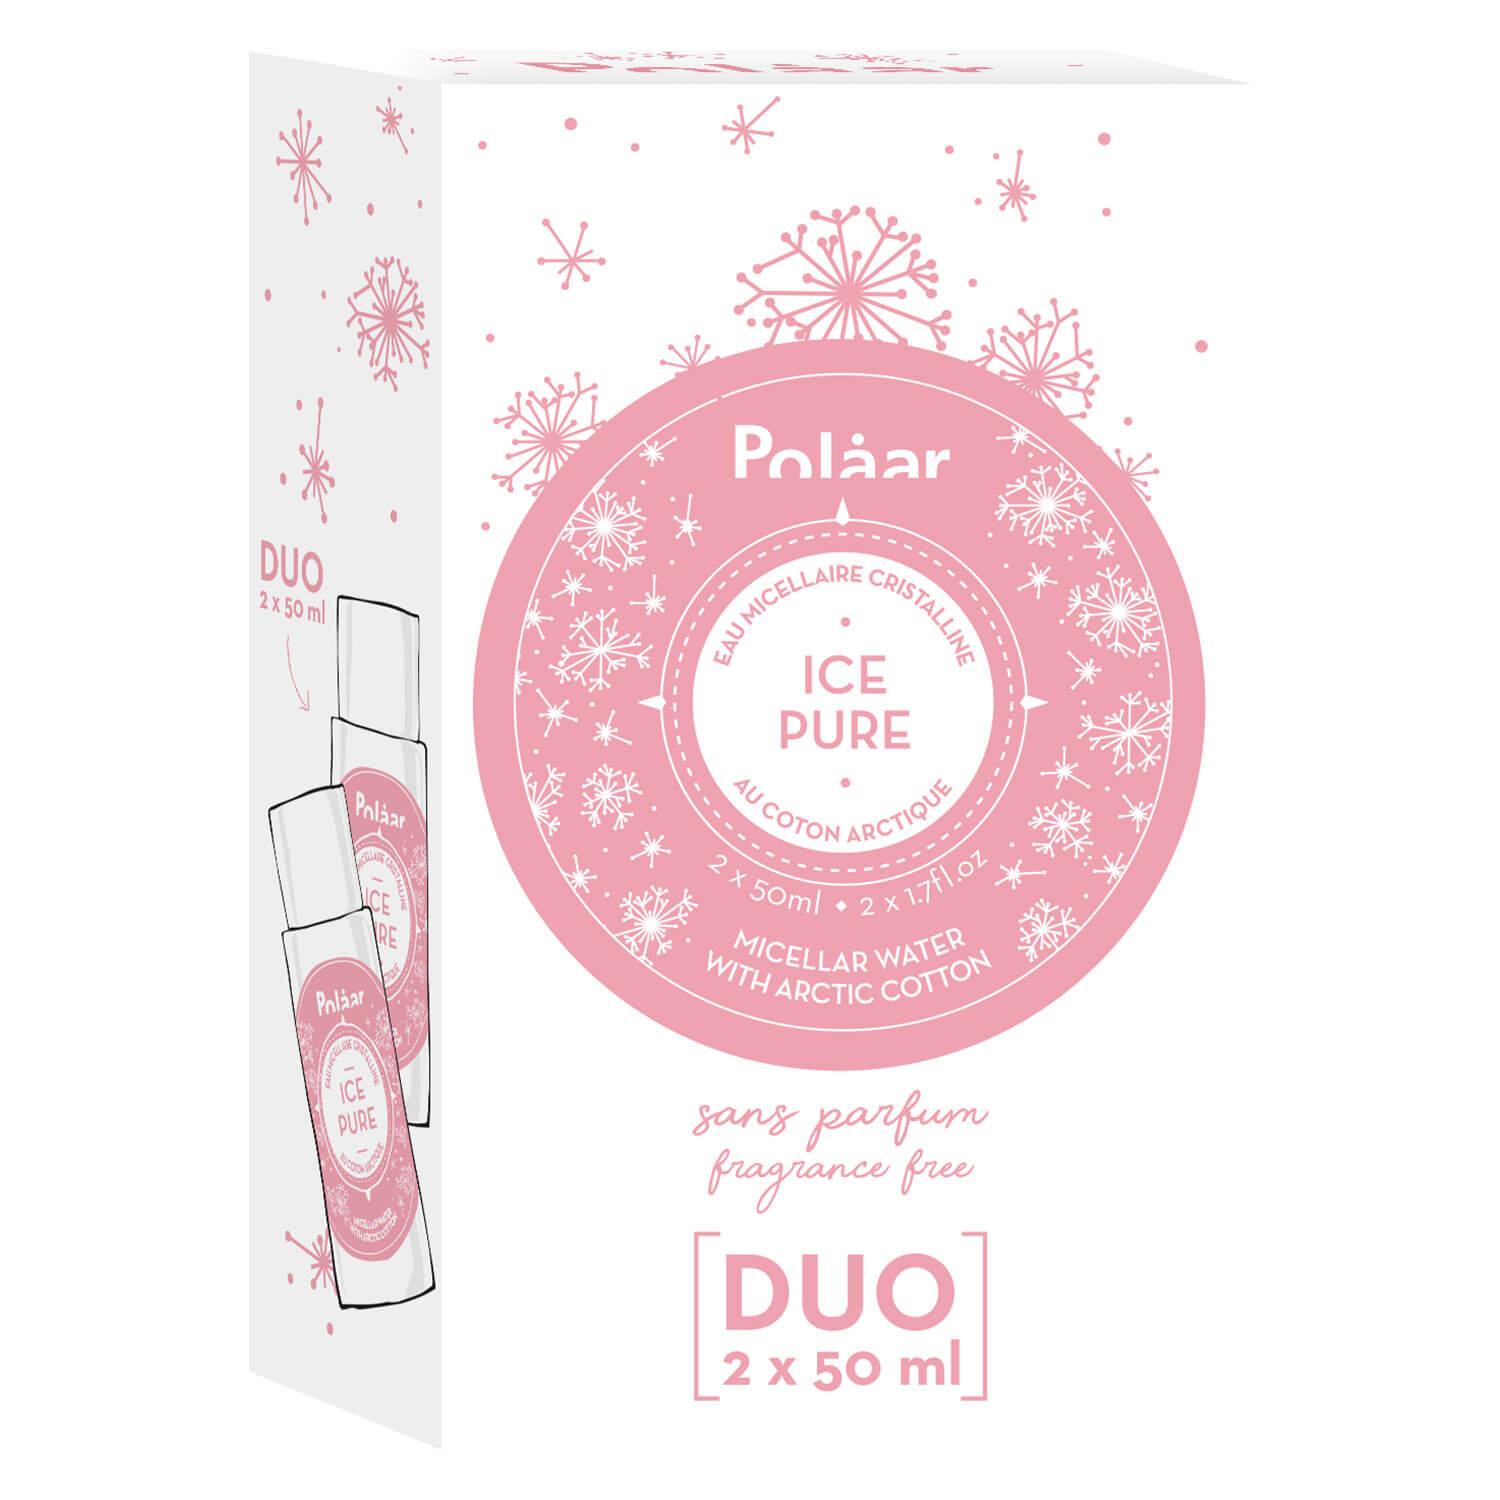 Polaar - Ice Pure Micellar Water Duo